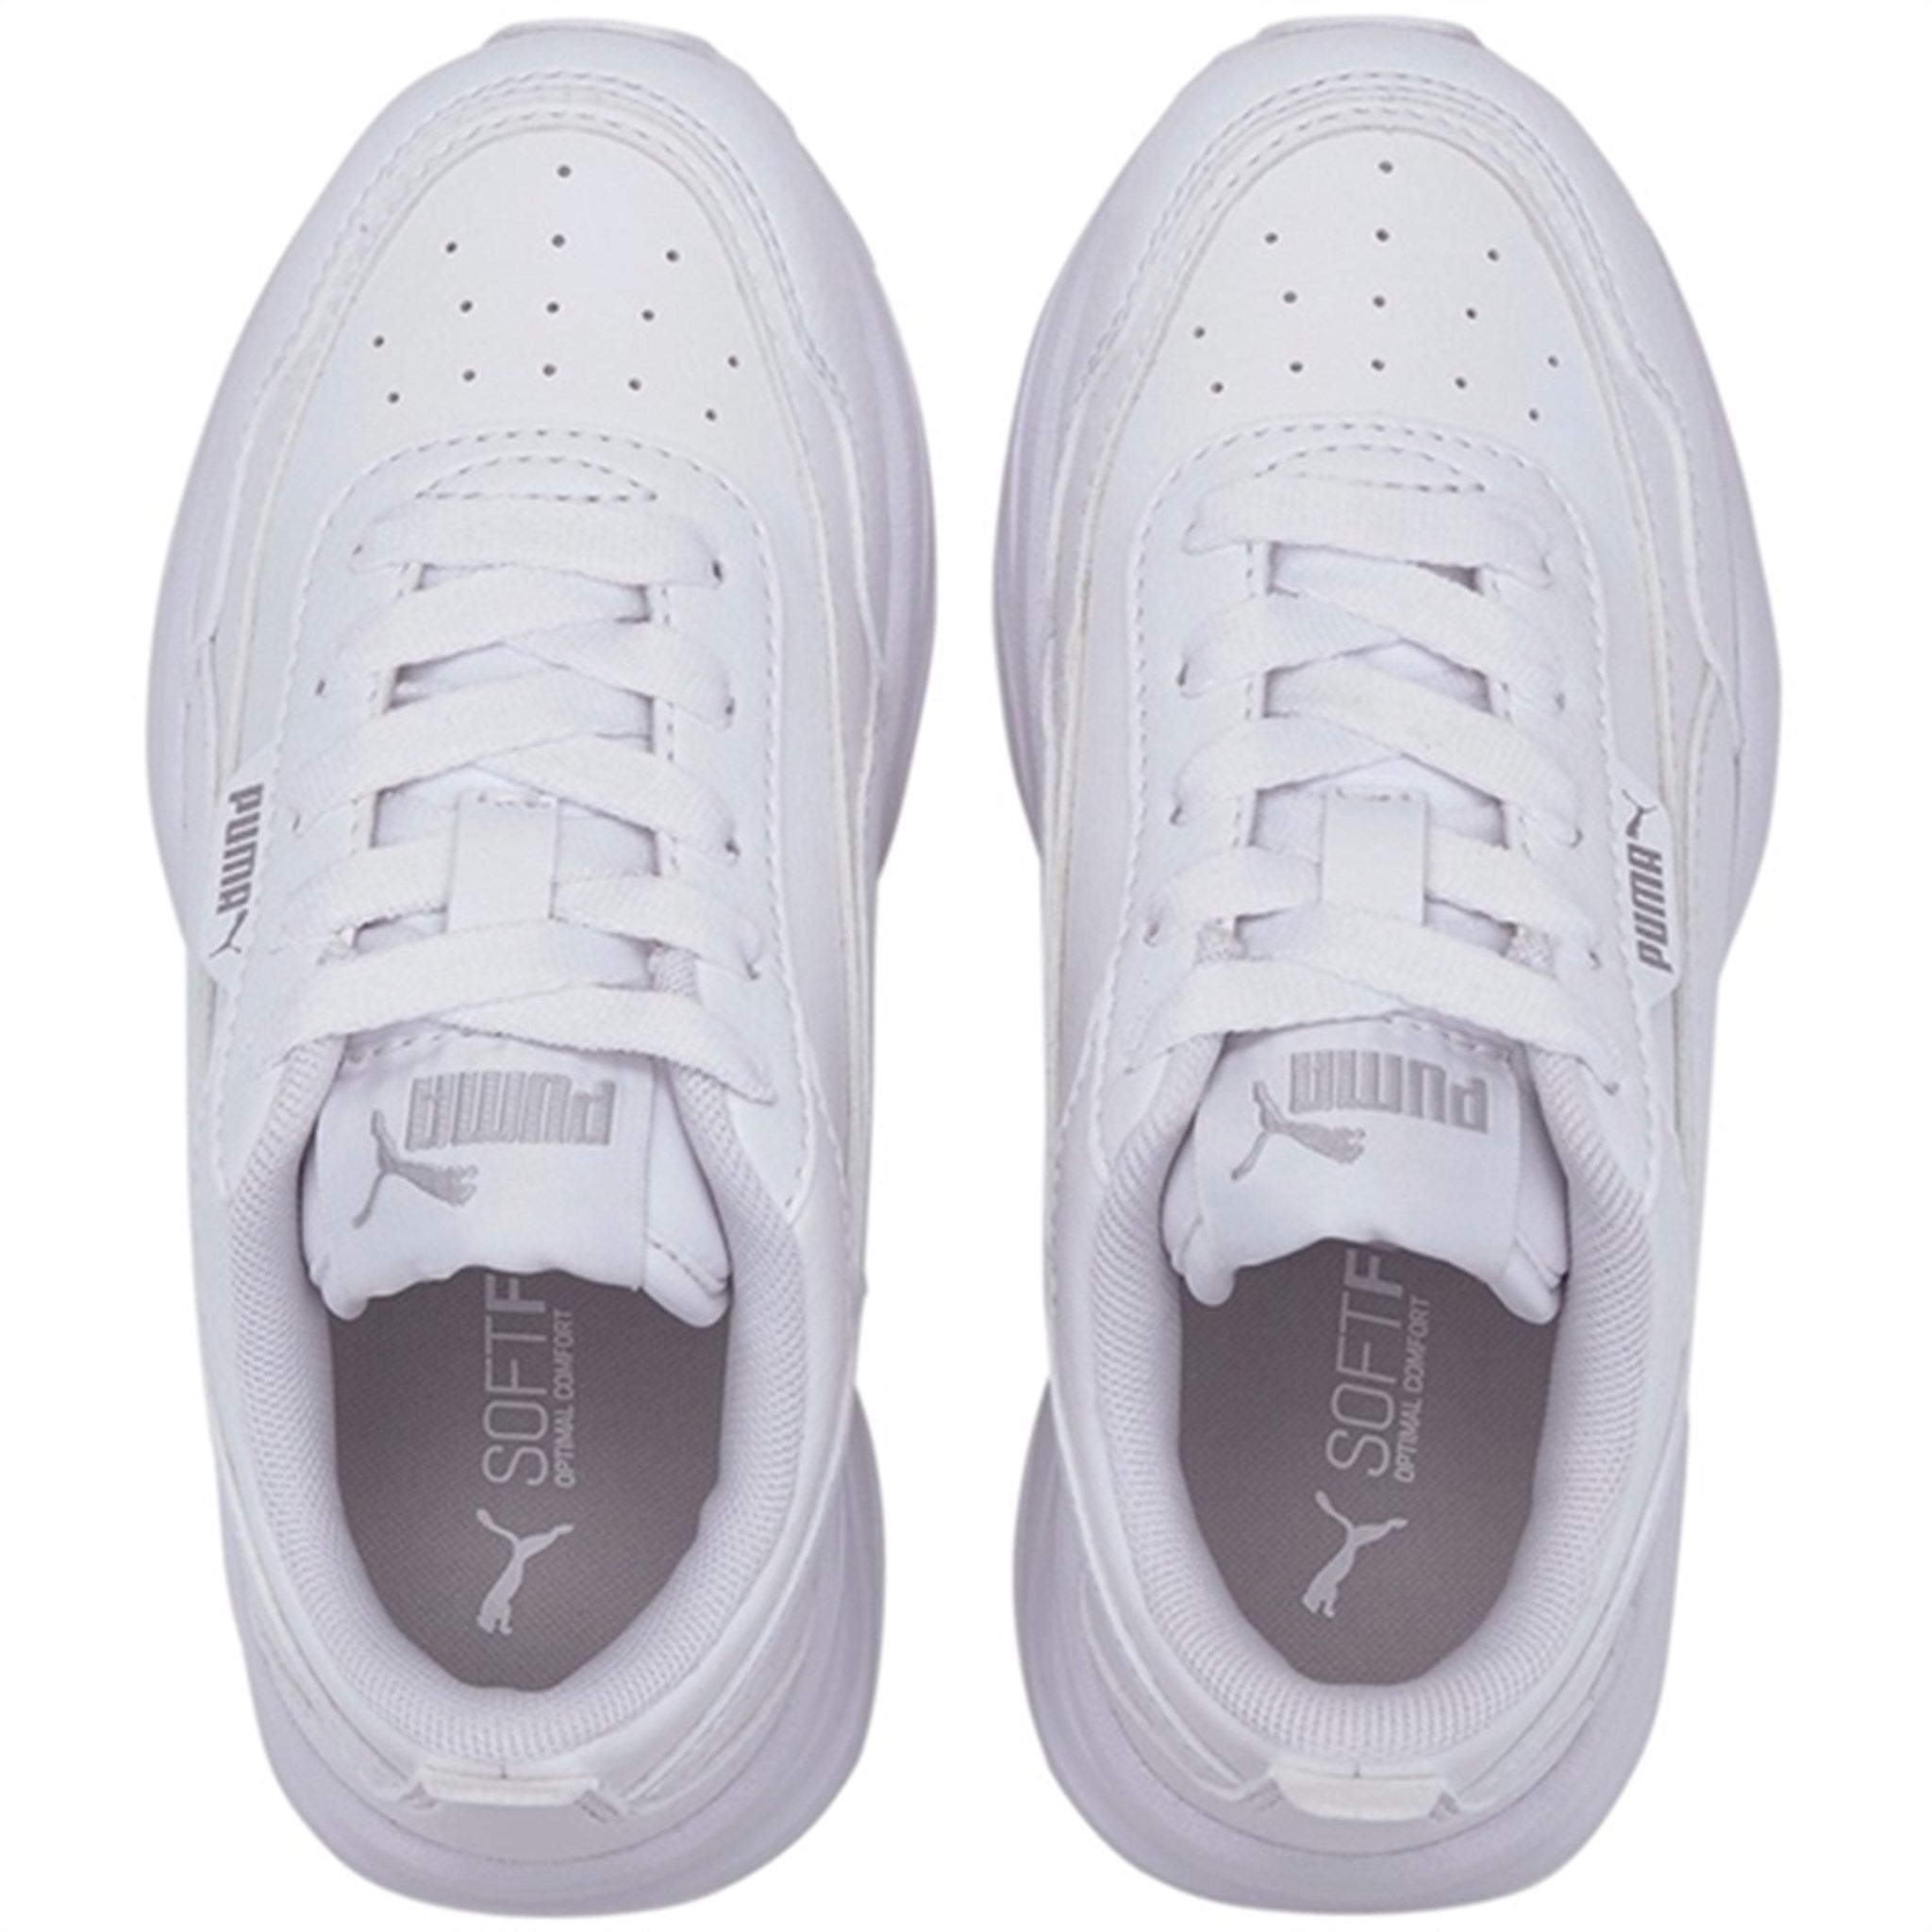 Puma Cilia Mode PS White-Silver-Gray Violet Sneakers 3